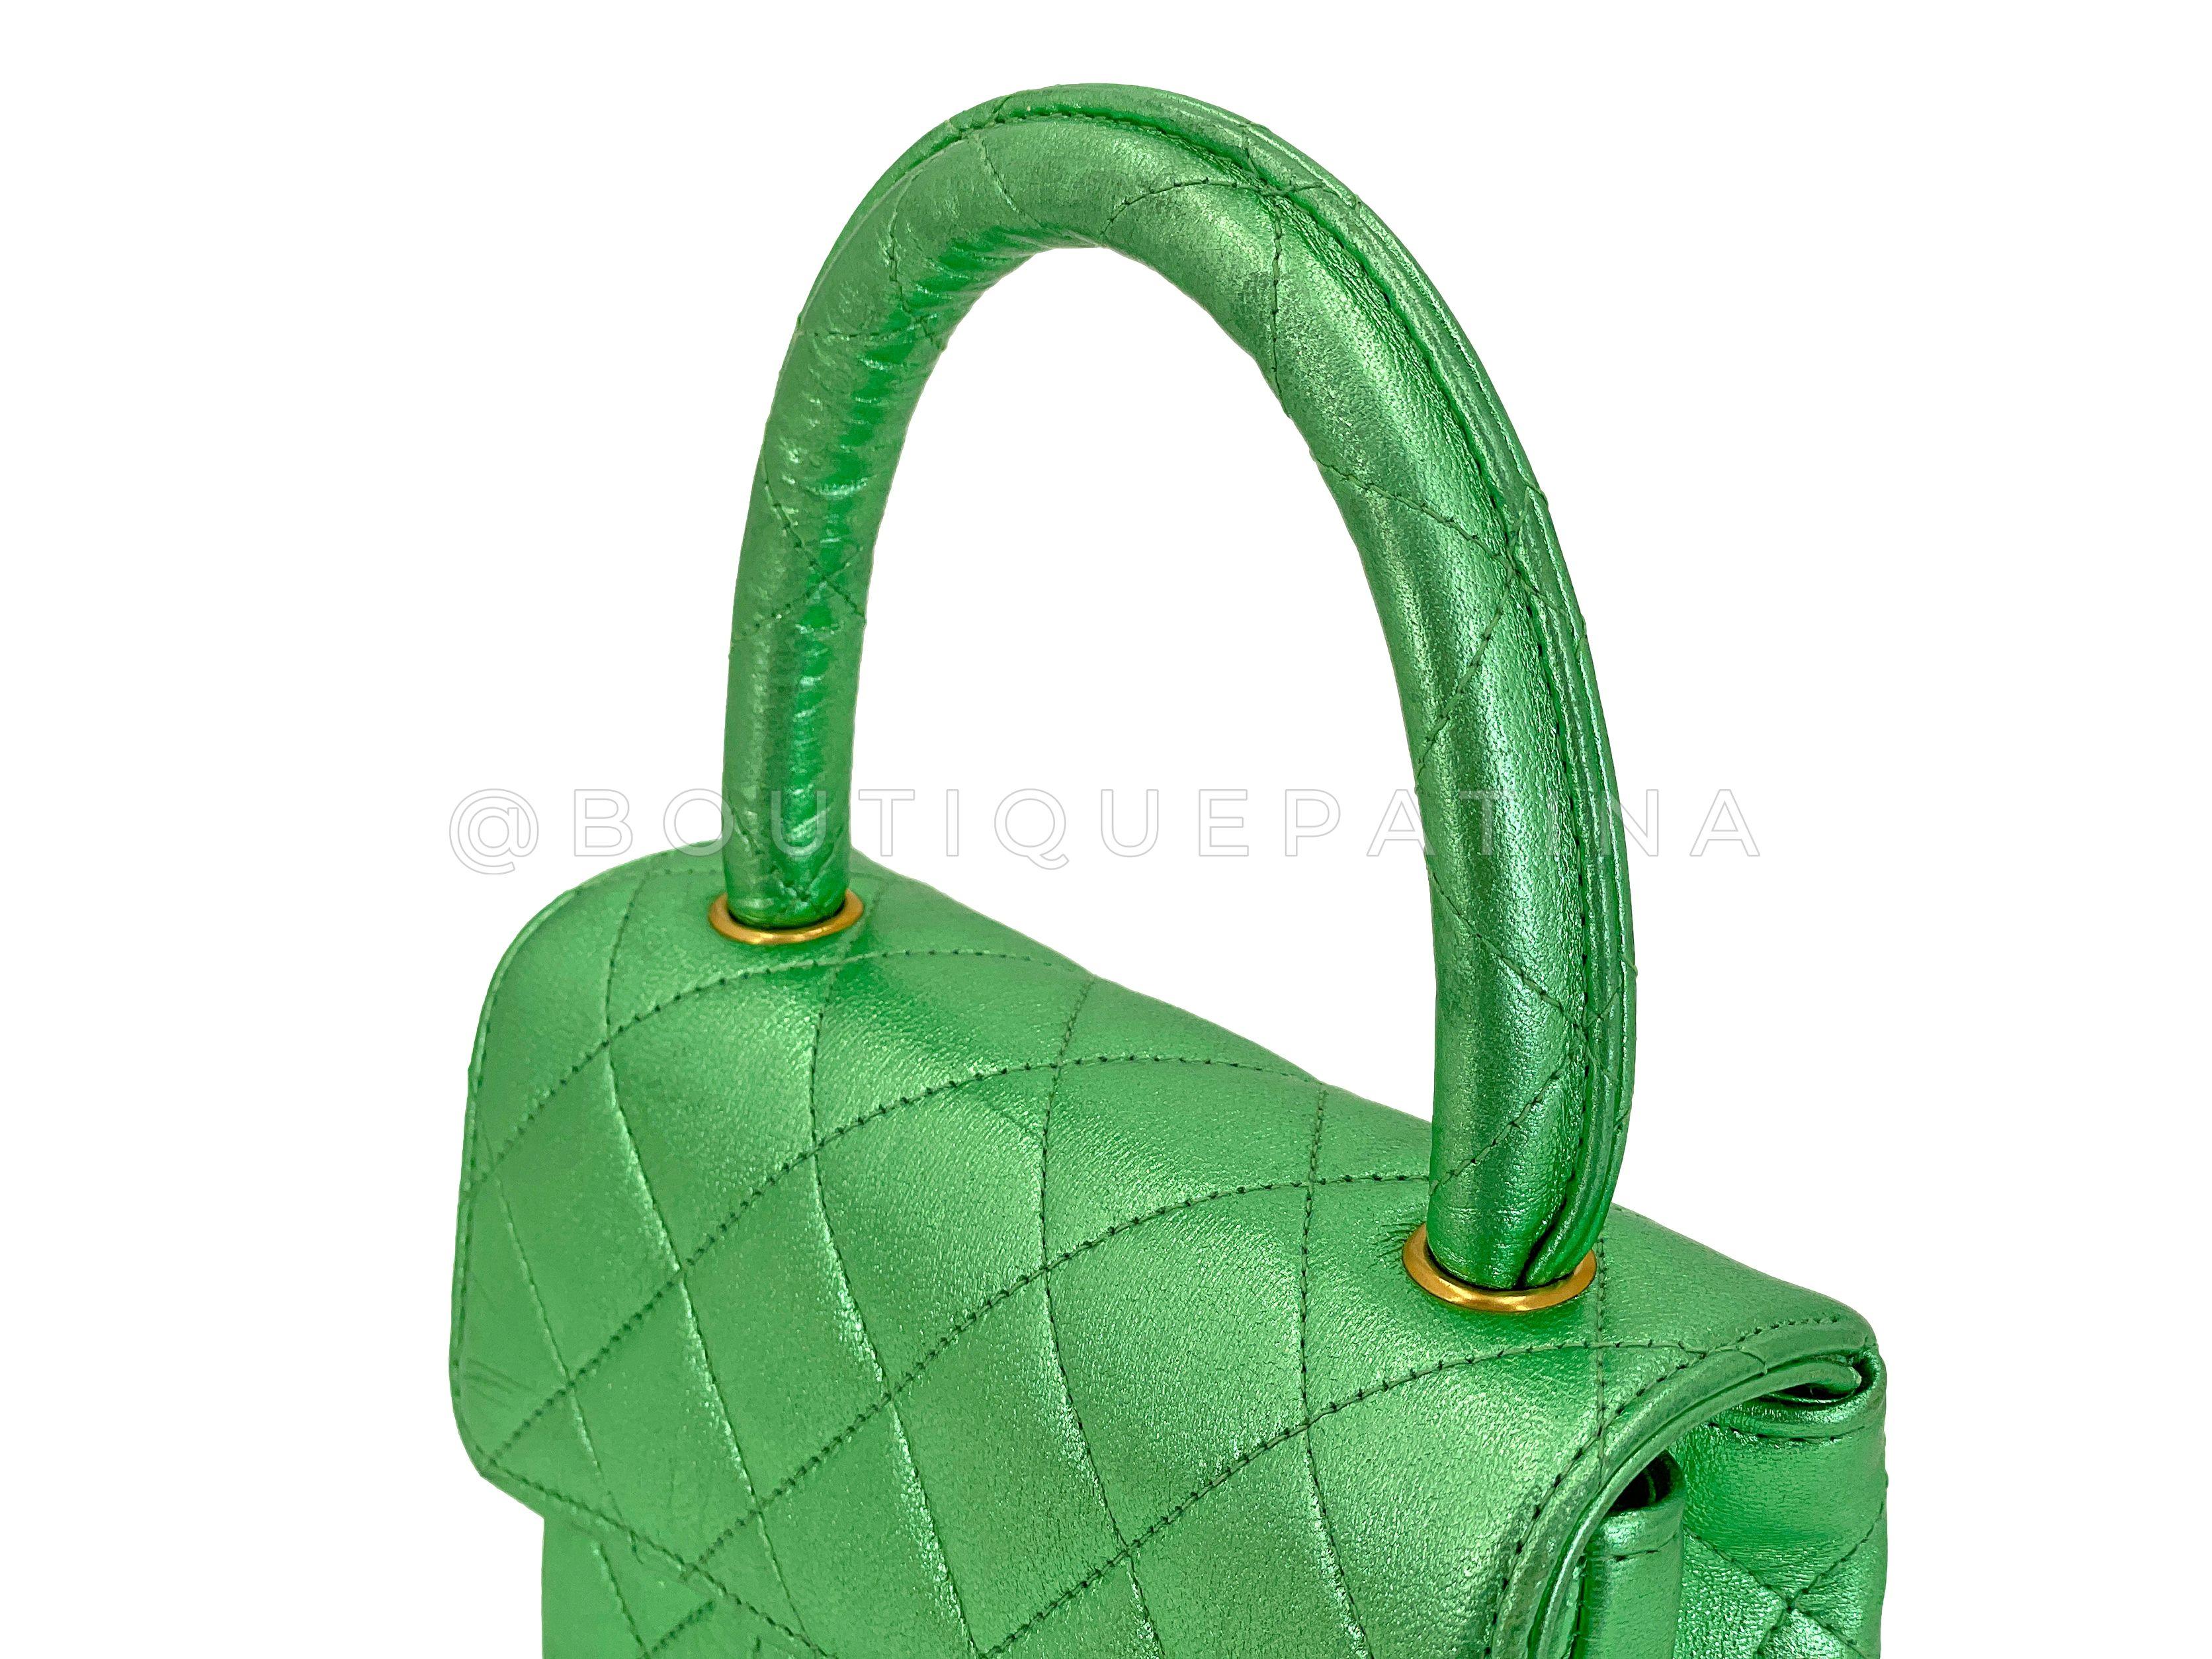 Chanel 1994 Vintage Parent Child Bag Kelly Flap Set Metallic Green 24k GHW 67742 For Sale 13